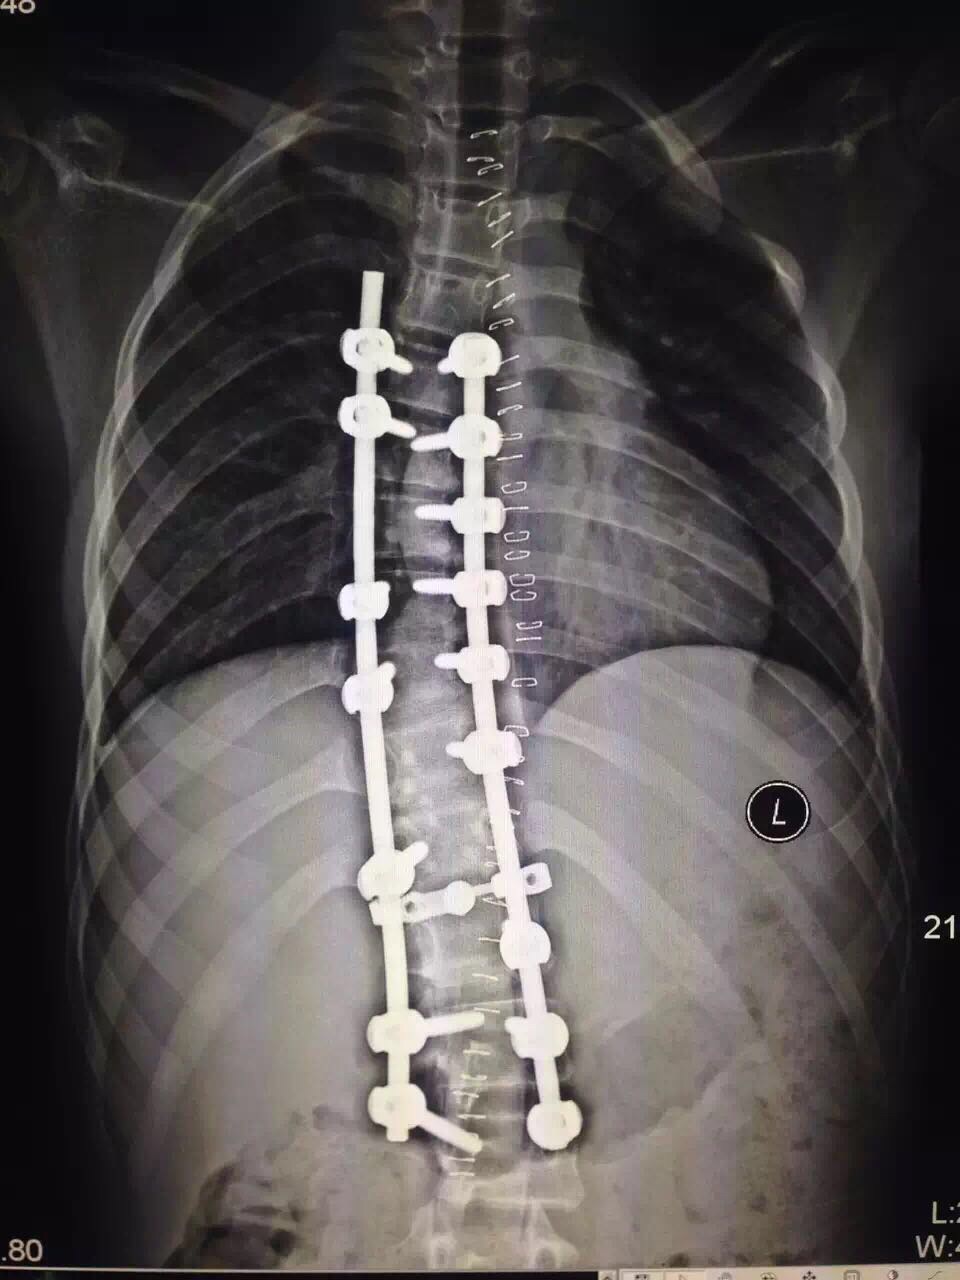 脊柱侧弯手术风险图片